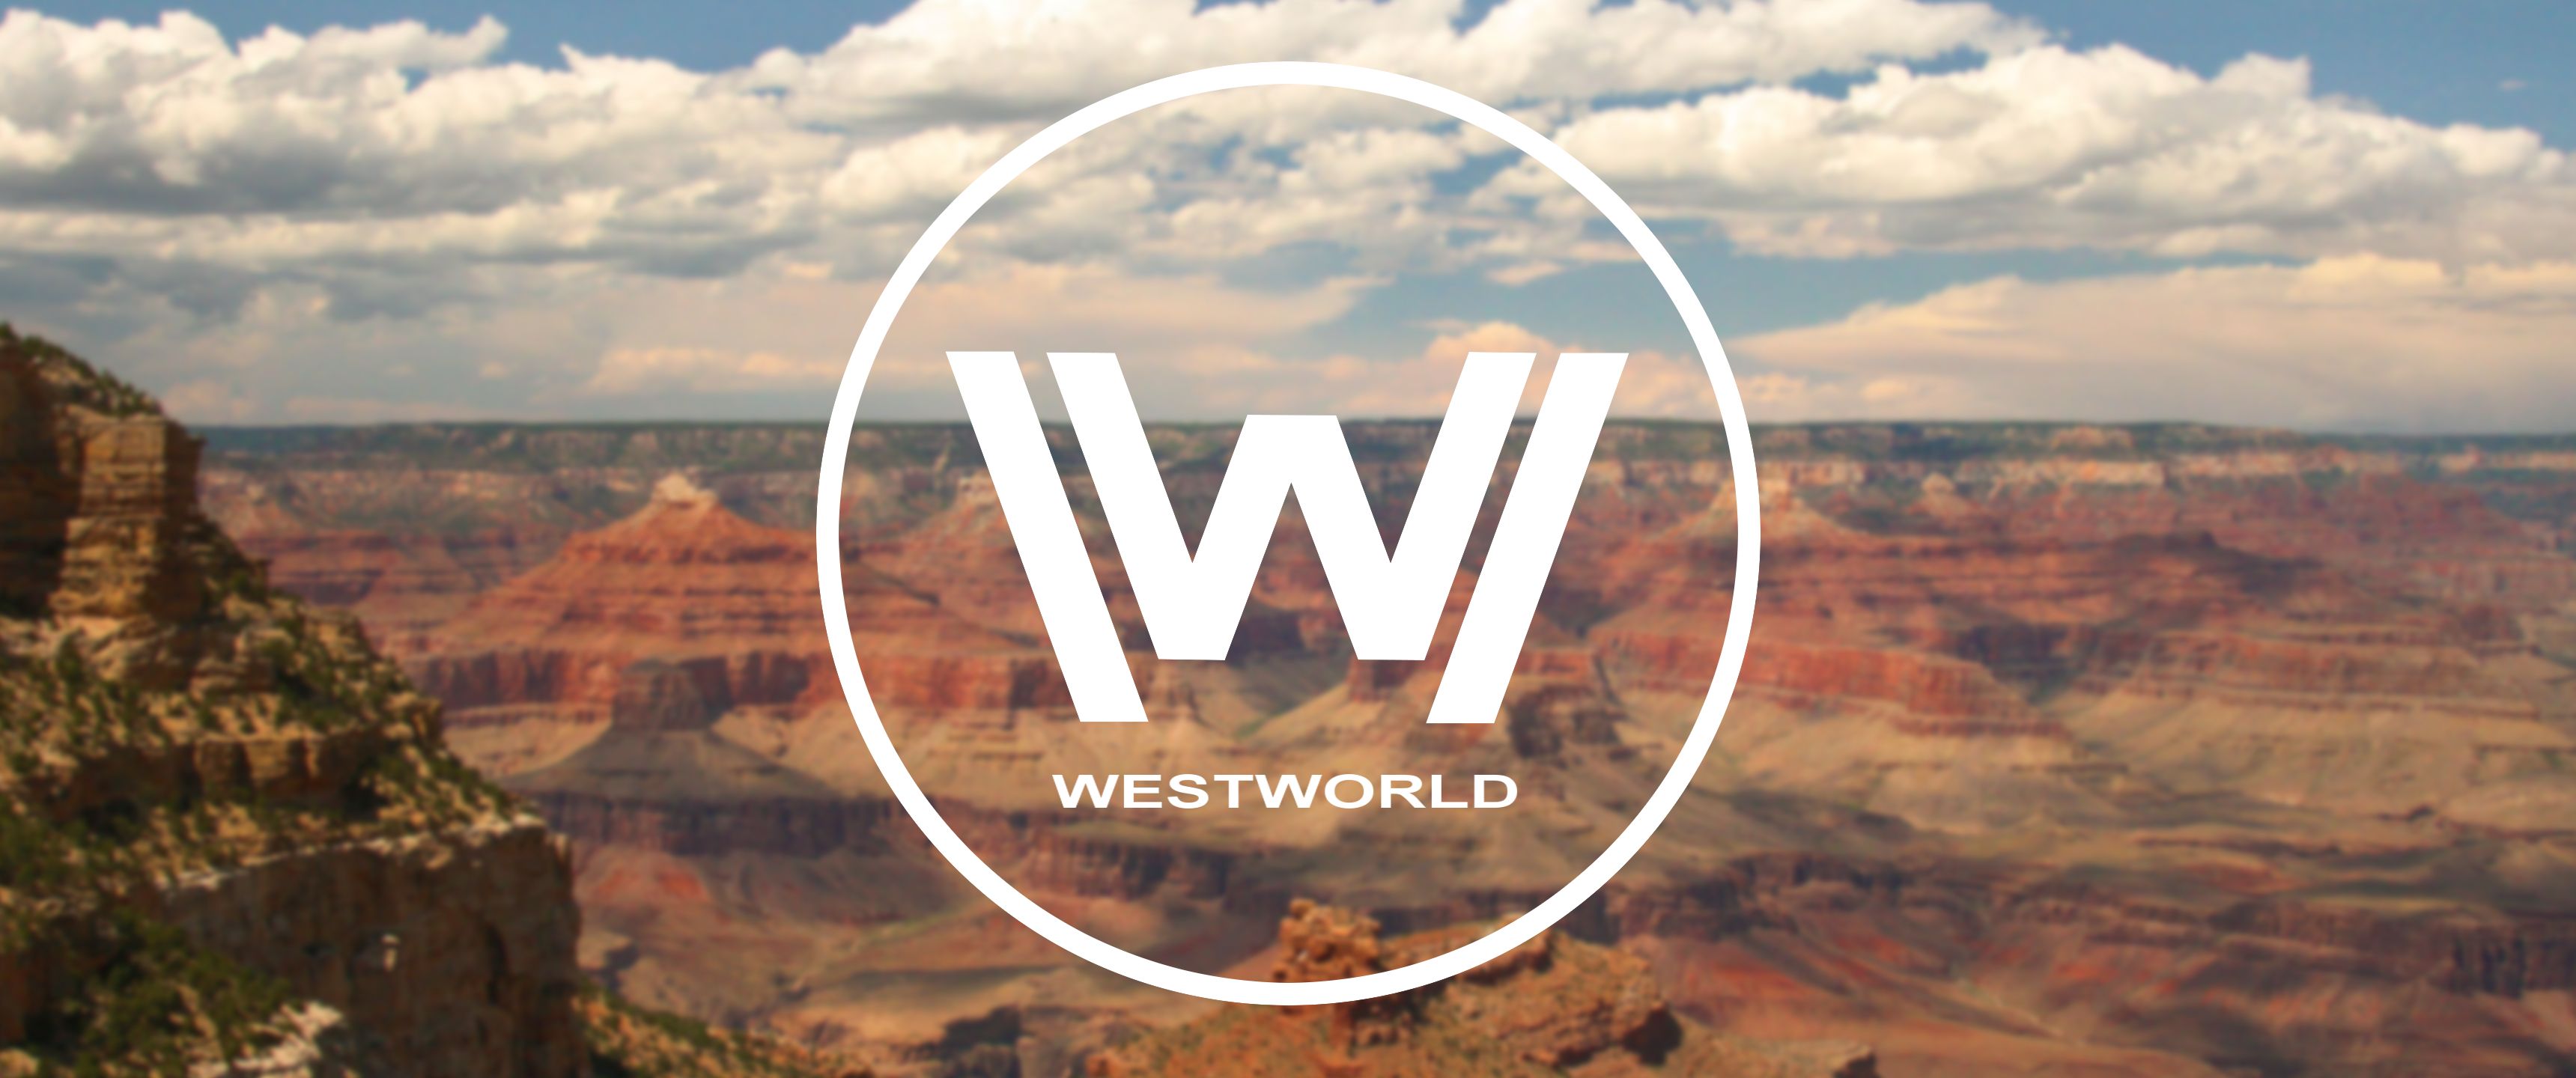 Westworld 3440x1440